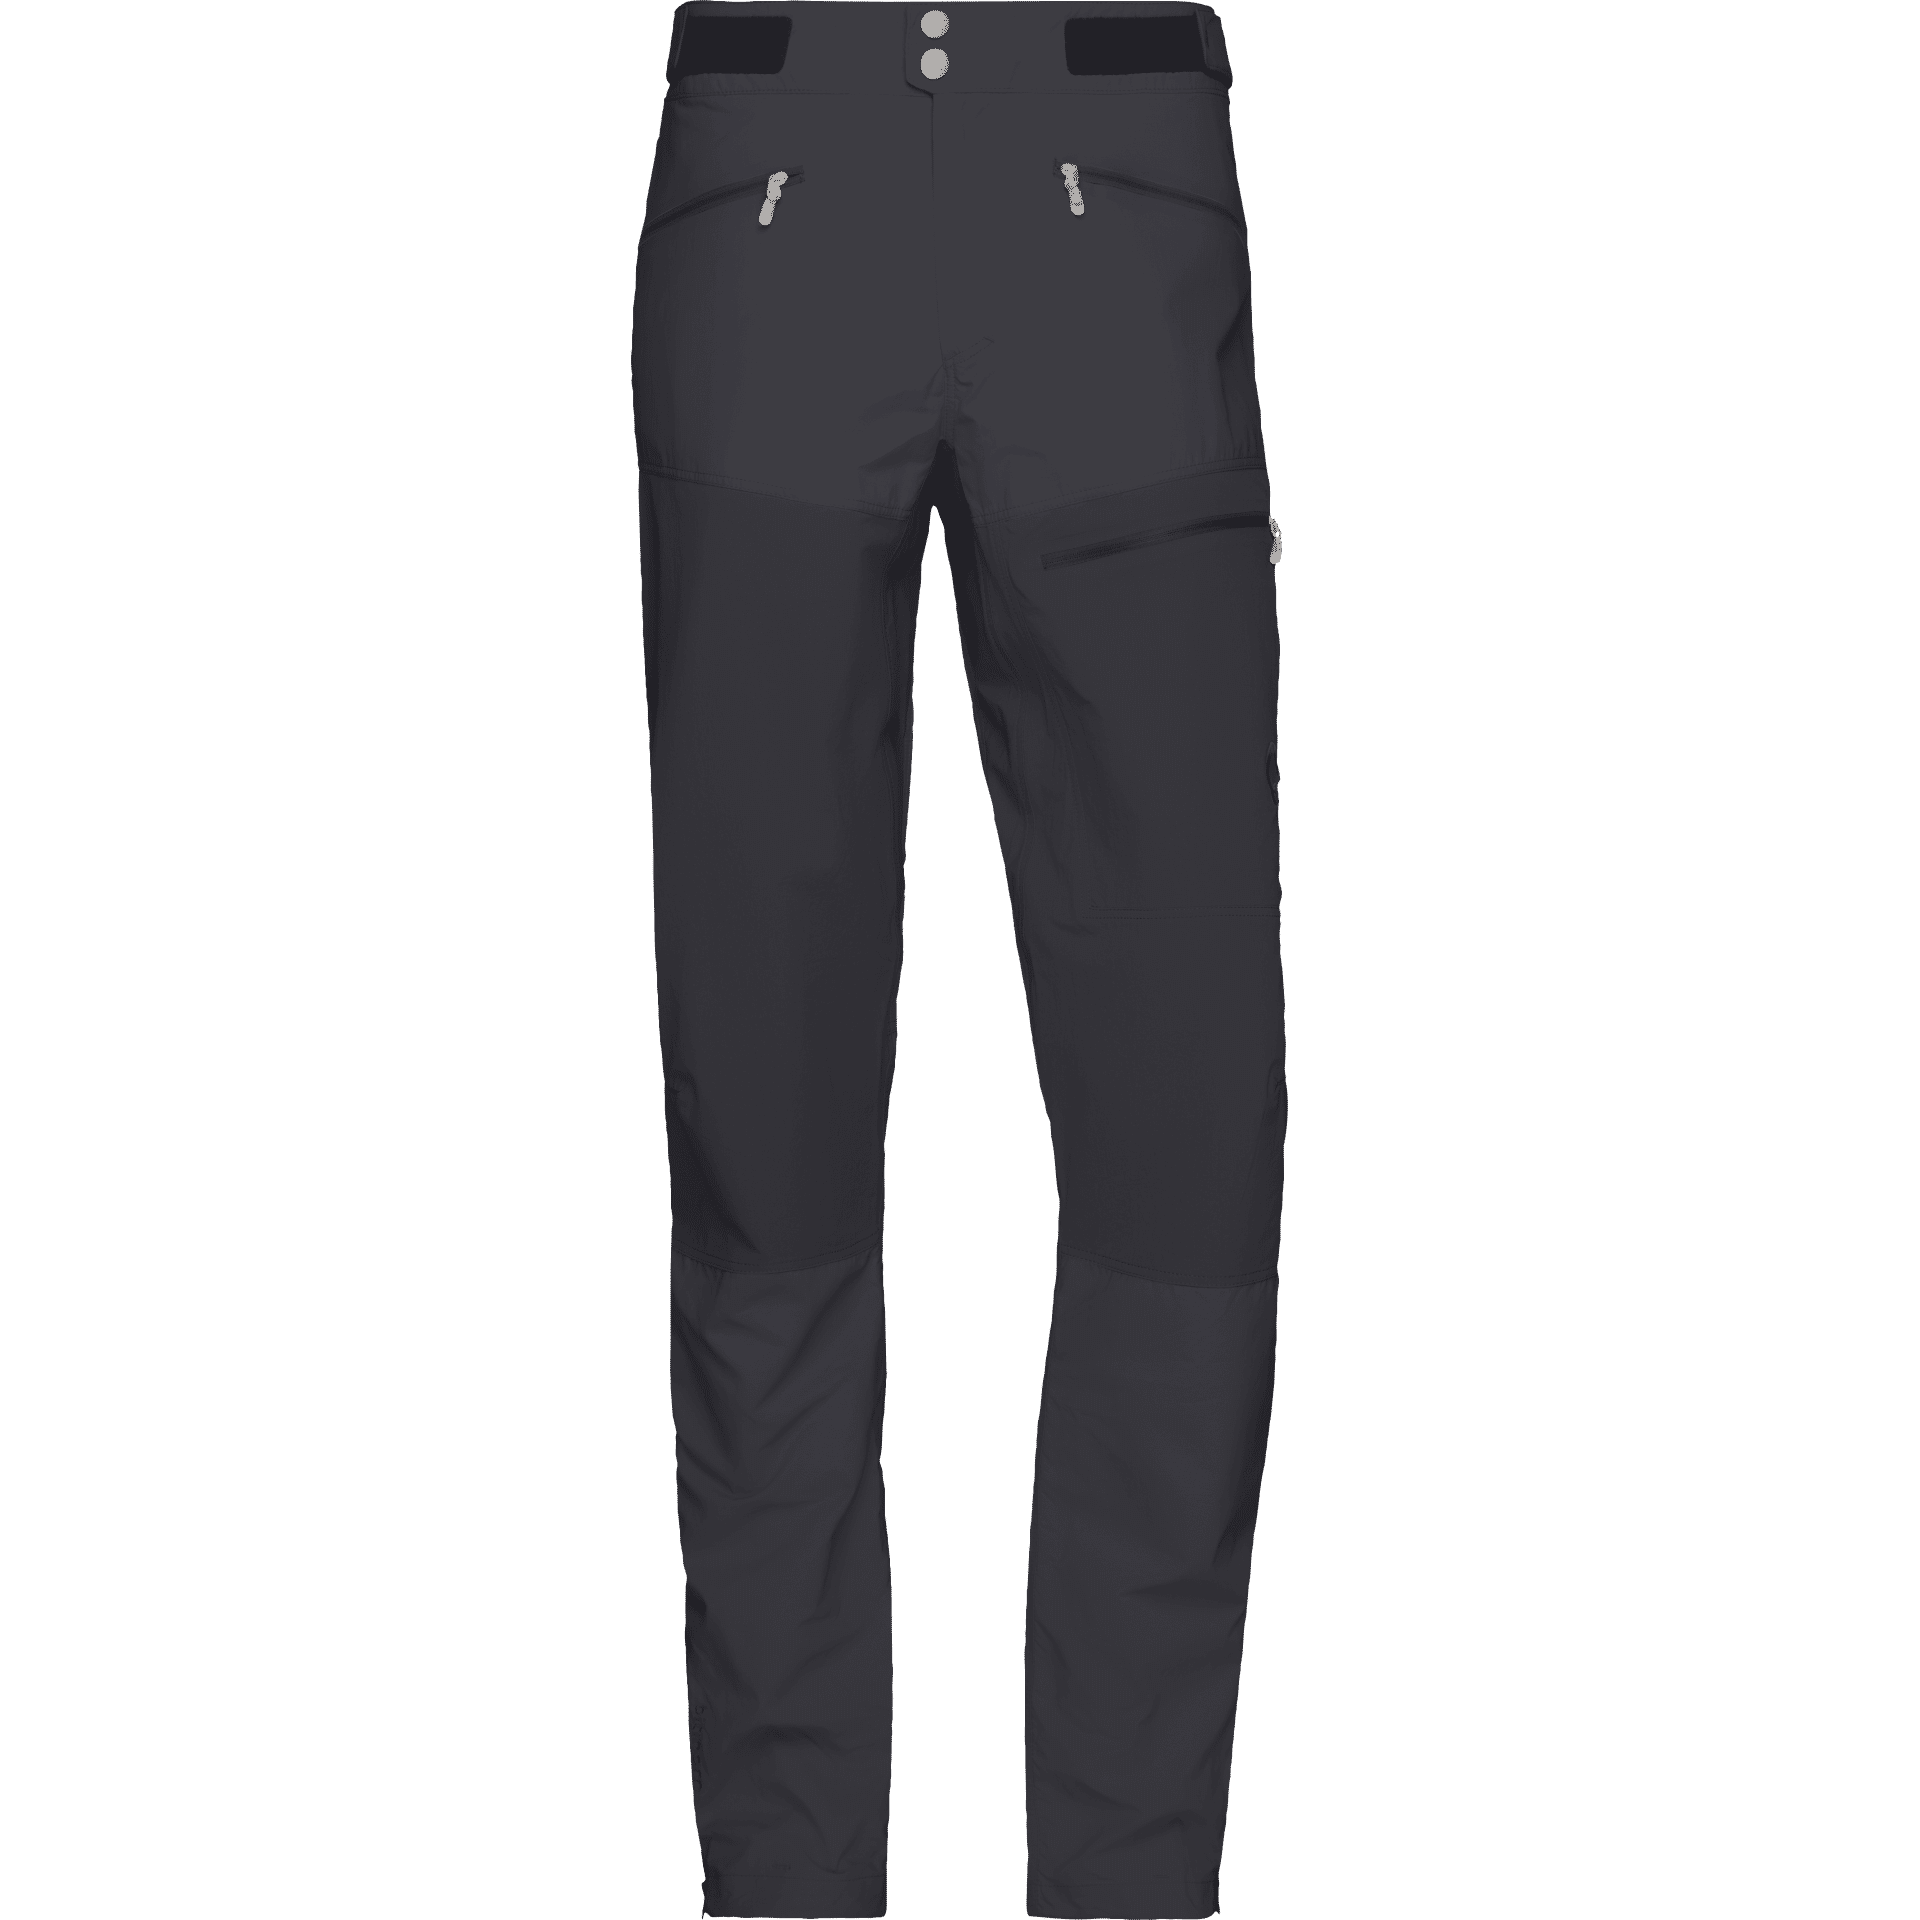 Nørrona Bitihorn Lightweight Pants - Pantalón de trekking - Hombre